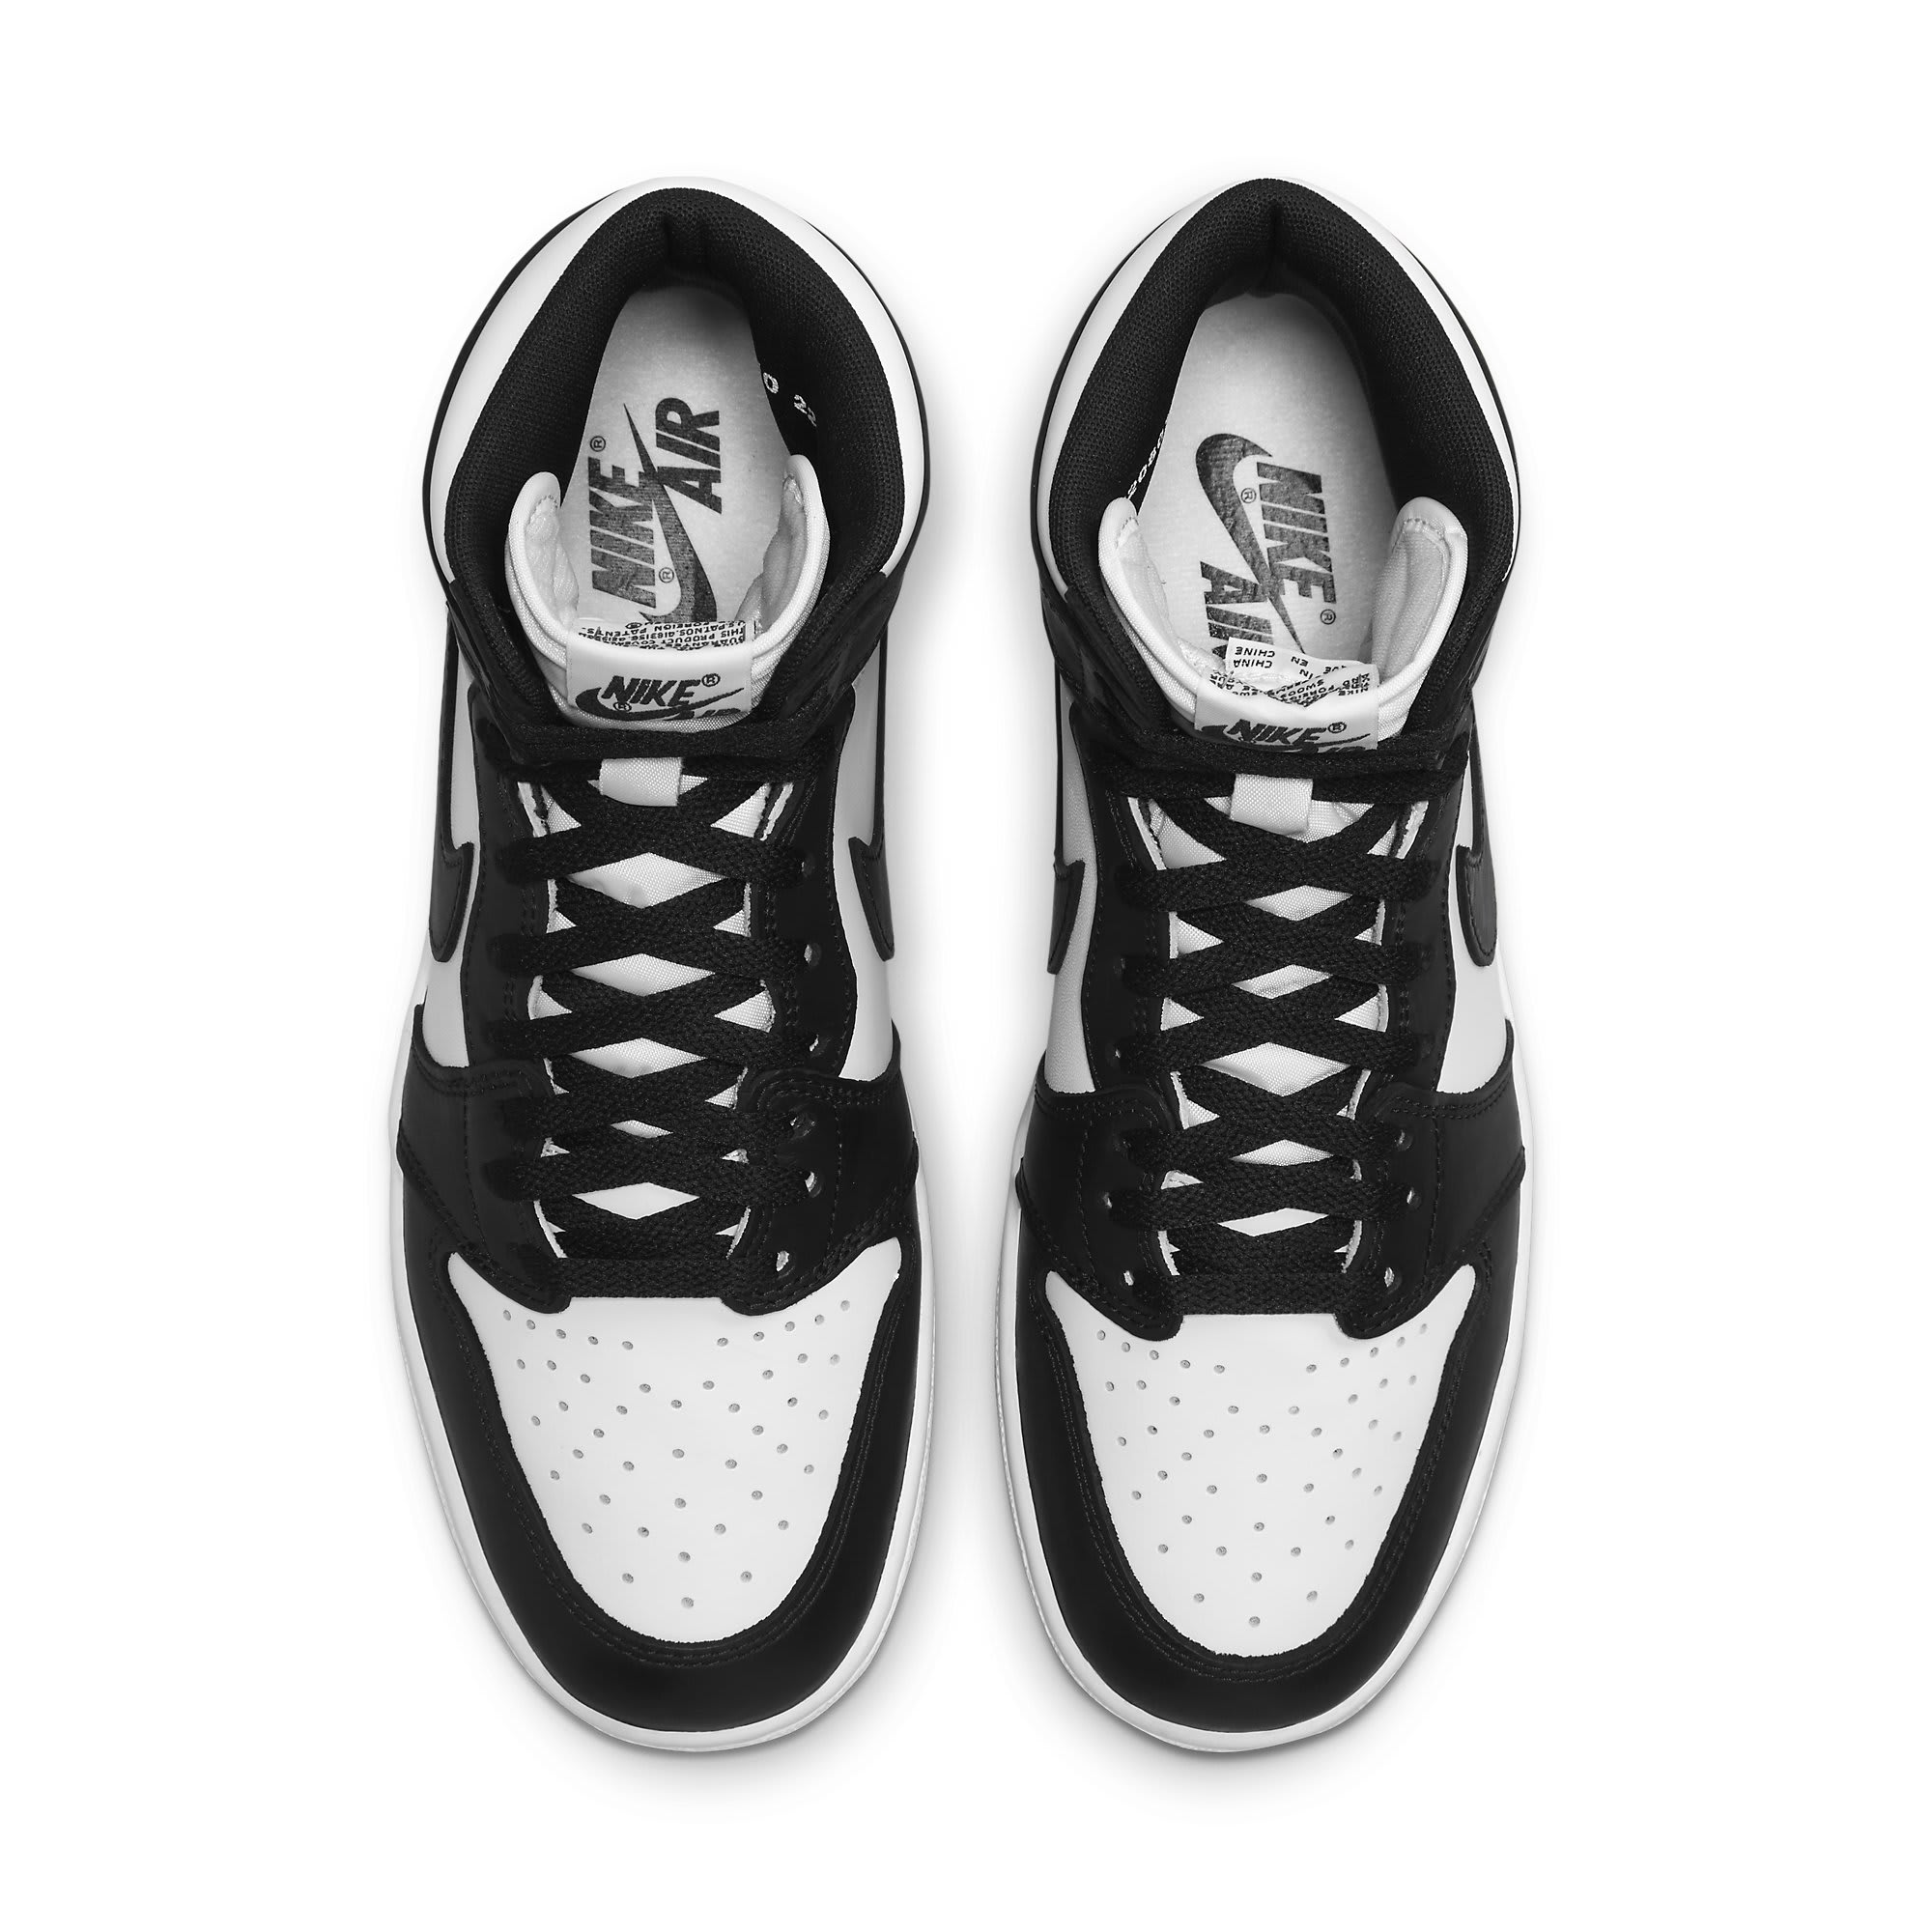 Air Jordan 1 Retro High '85 OG Black White Sneakers